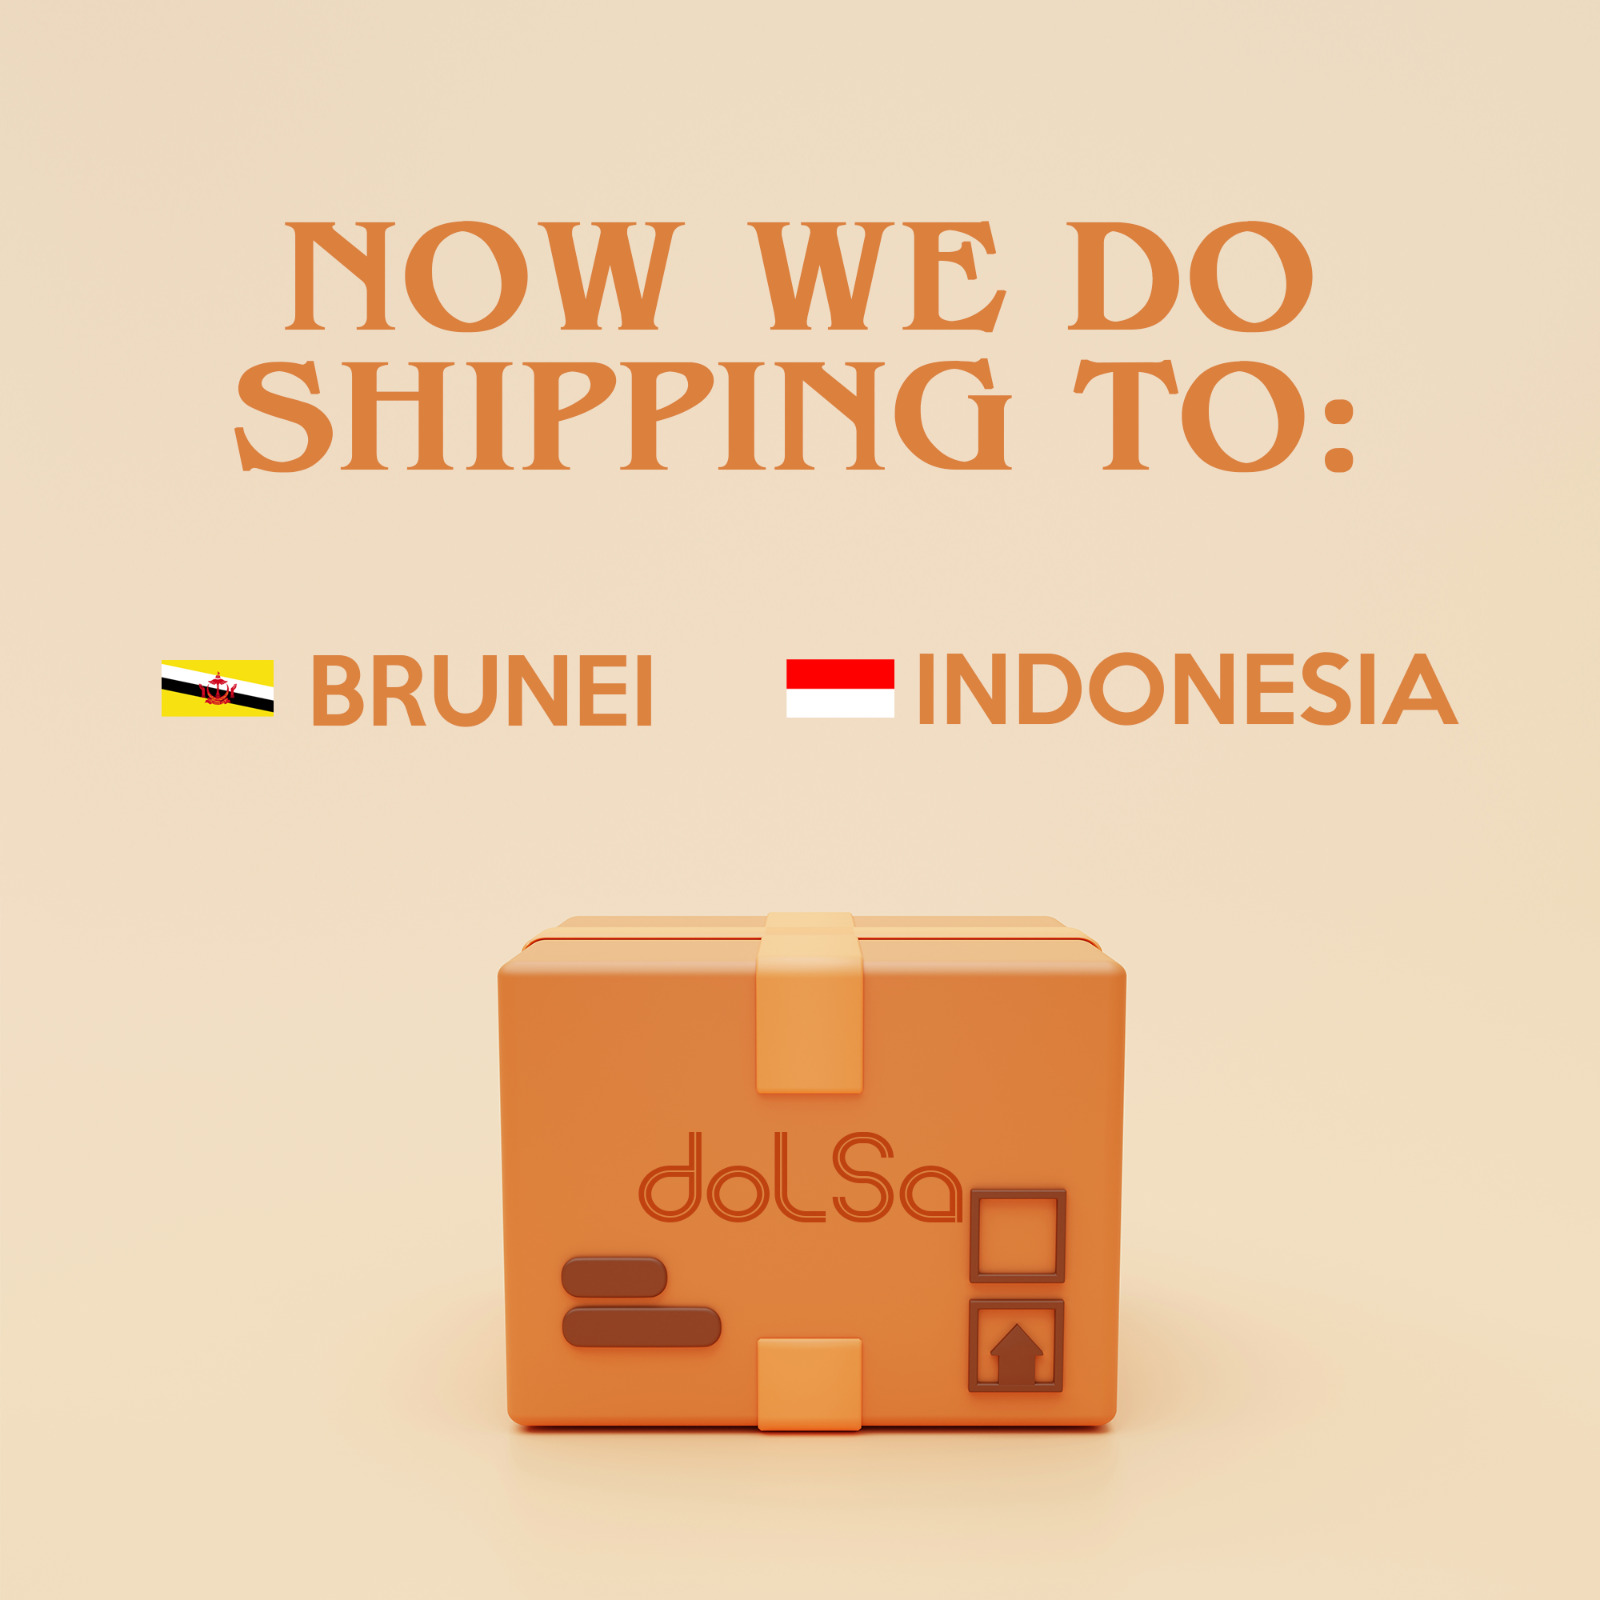 Brueni shipping